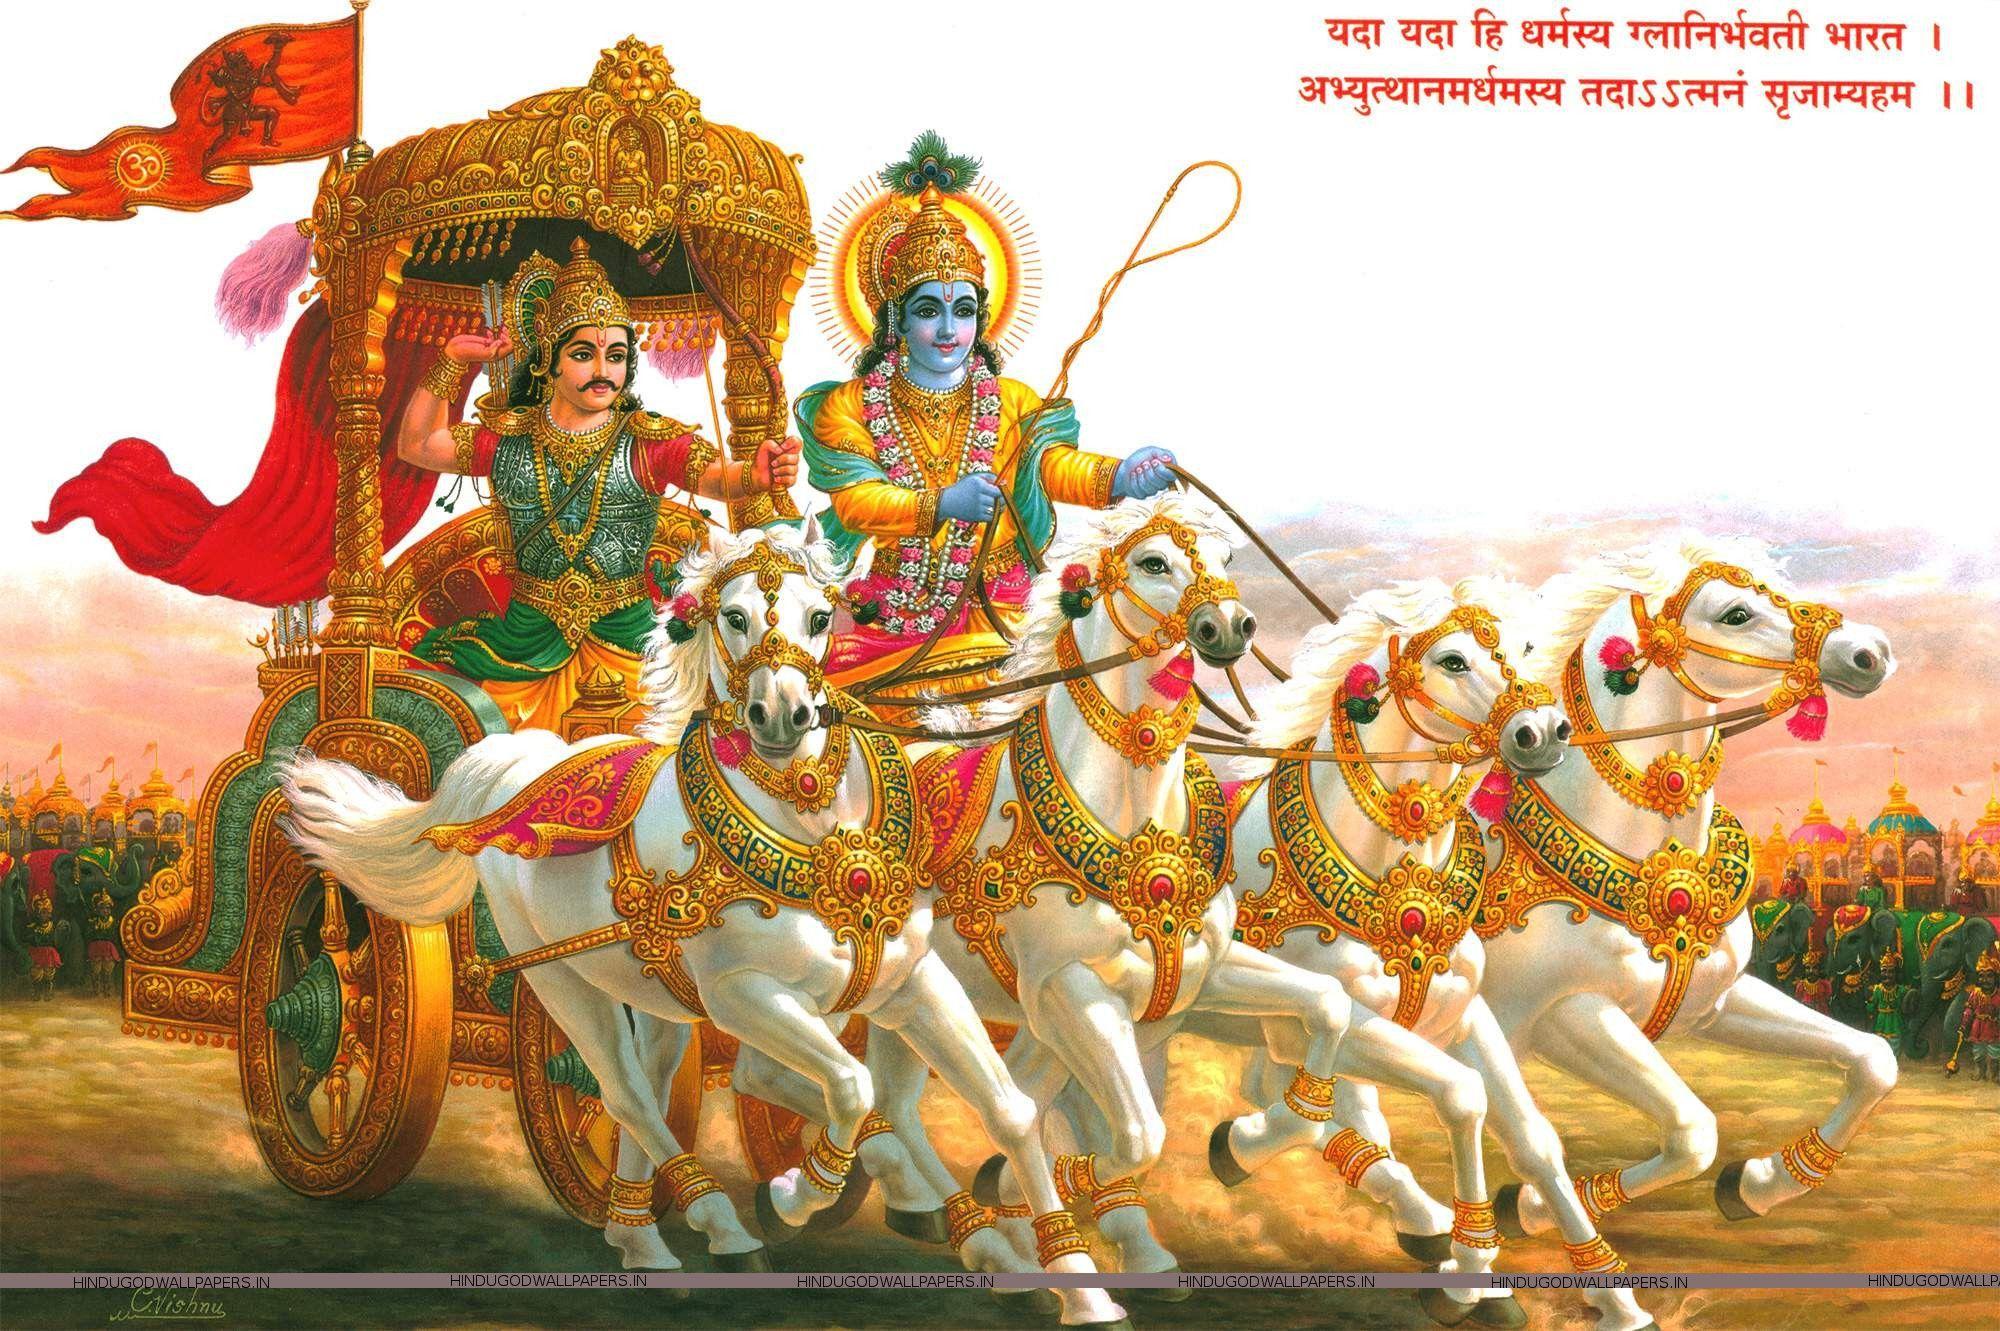 Rare Death Story of Karn from Mahabharat | by Pratul Vishera | Medium